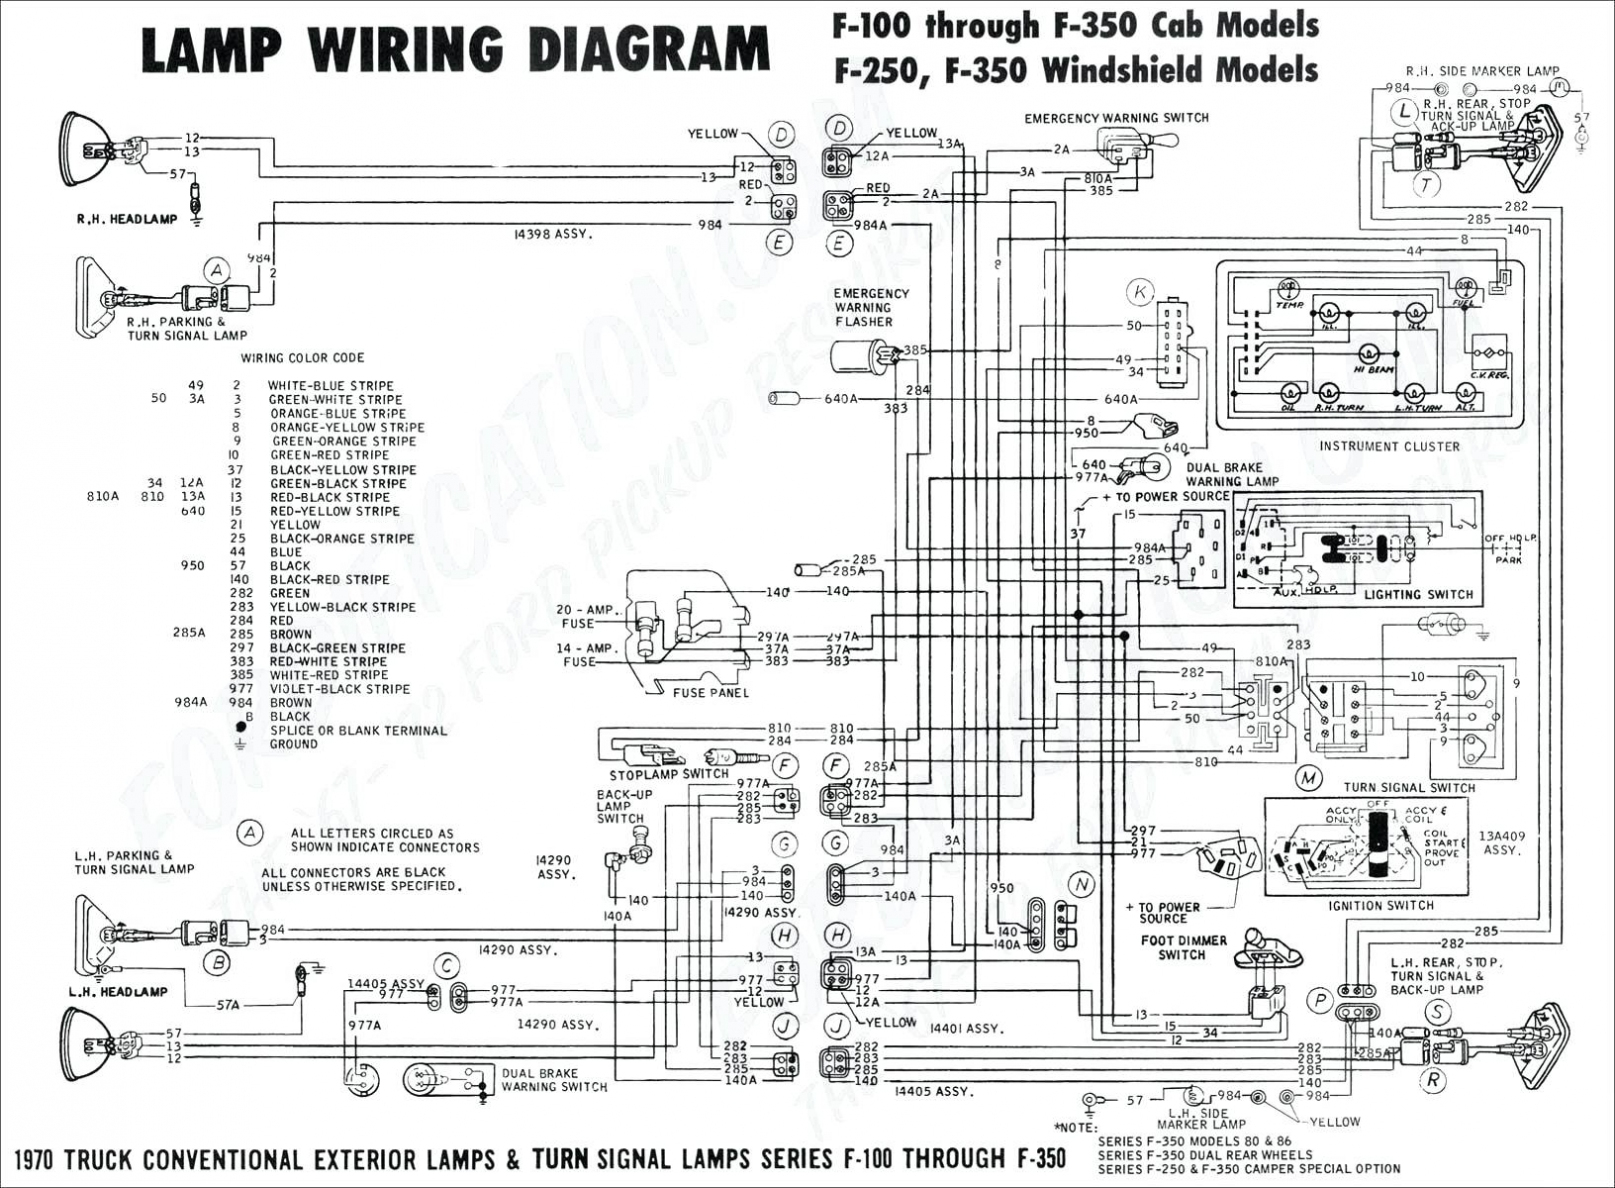 Monaco Rv Ke Light Wiring Diagrams | Wiring Diagram - Monaco Rv Wiring Diagram